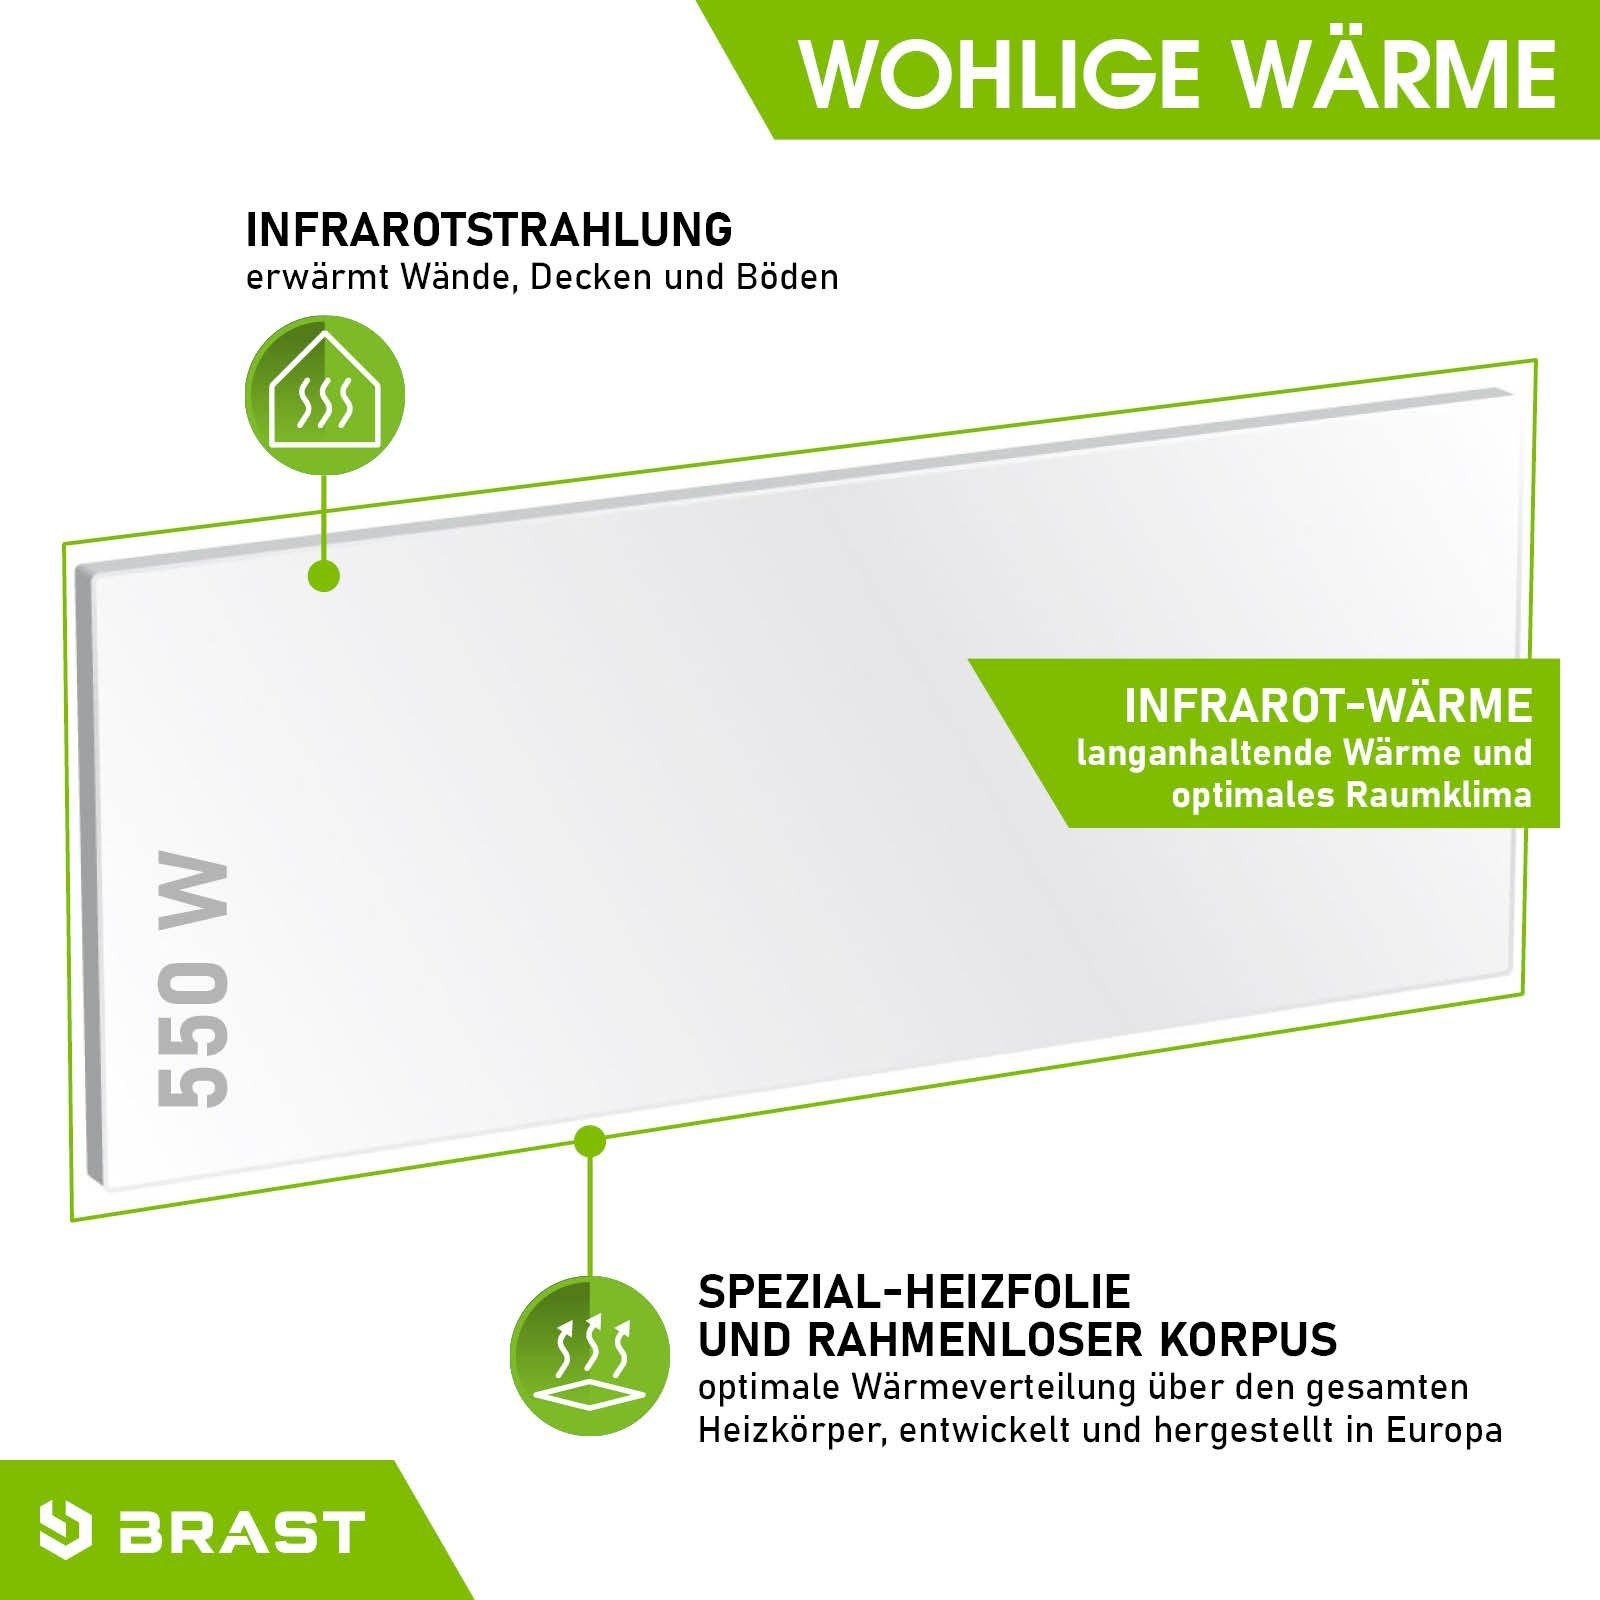 BRAST EU Raumklima mit Watt & Made Infrarotheizung 550 in Stahlgehäuse inkl. Spezial-Heizfolie bestes für Wandhalterung Überhitzungsschutz Montagematerial,